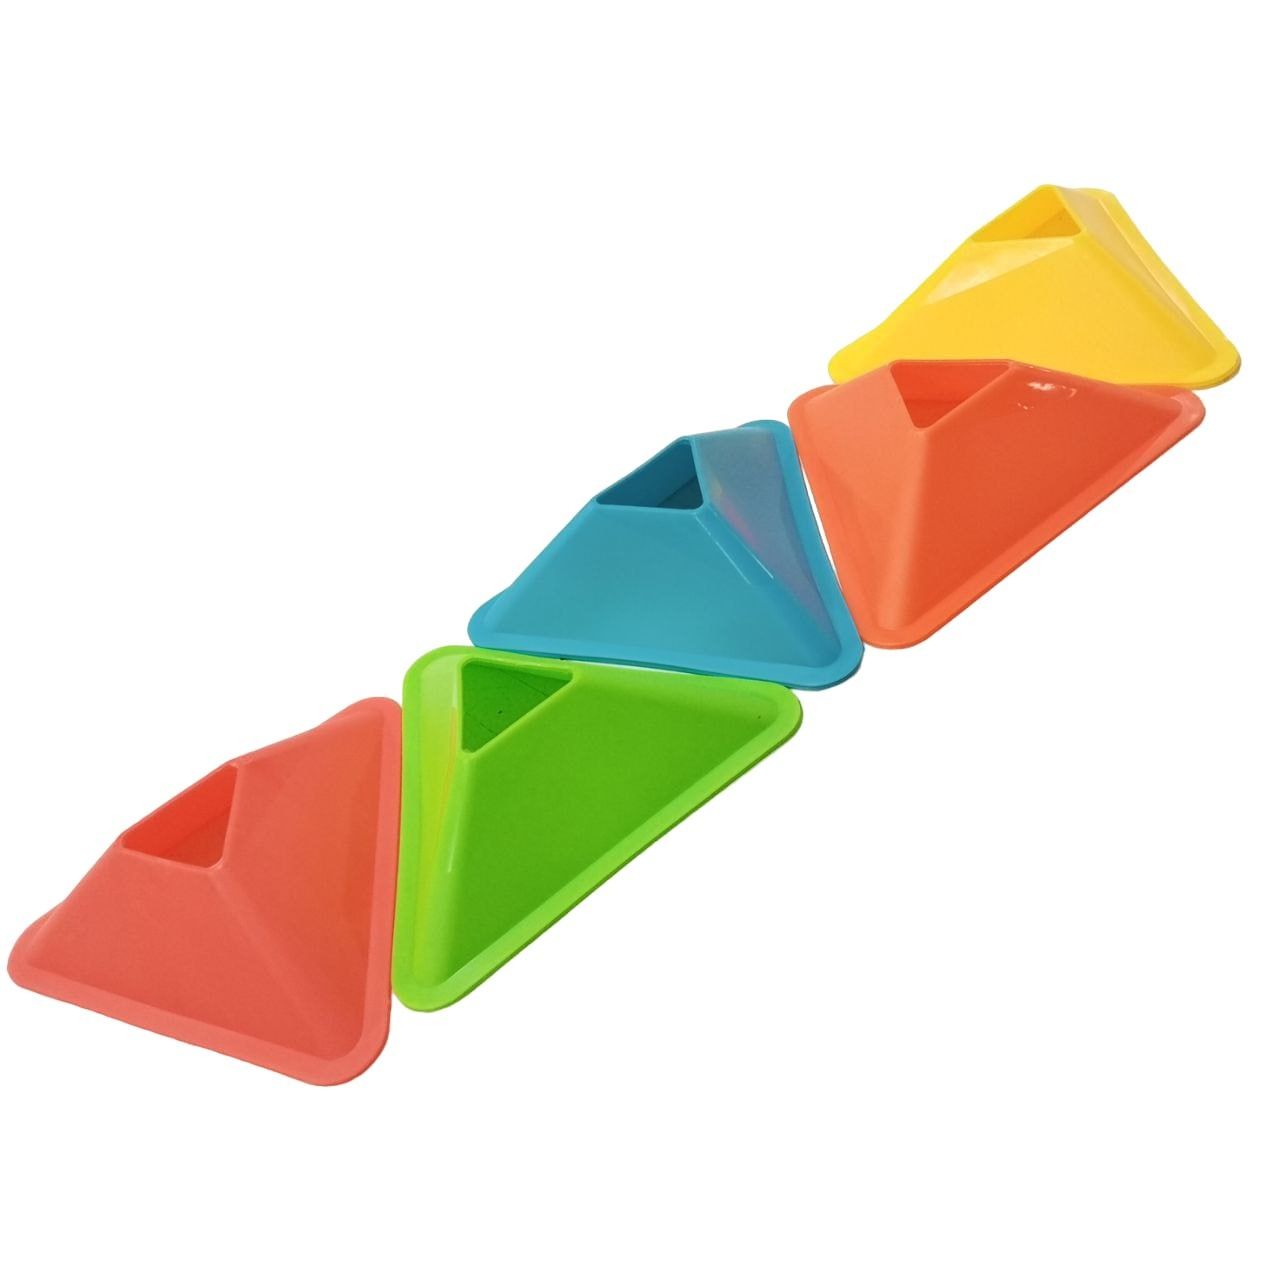 Треуголные фишки, тренировочные фишки, футбольные фишки разных цветов